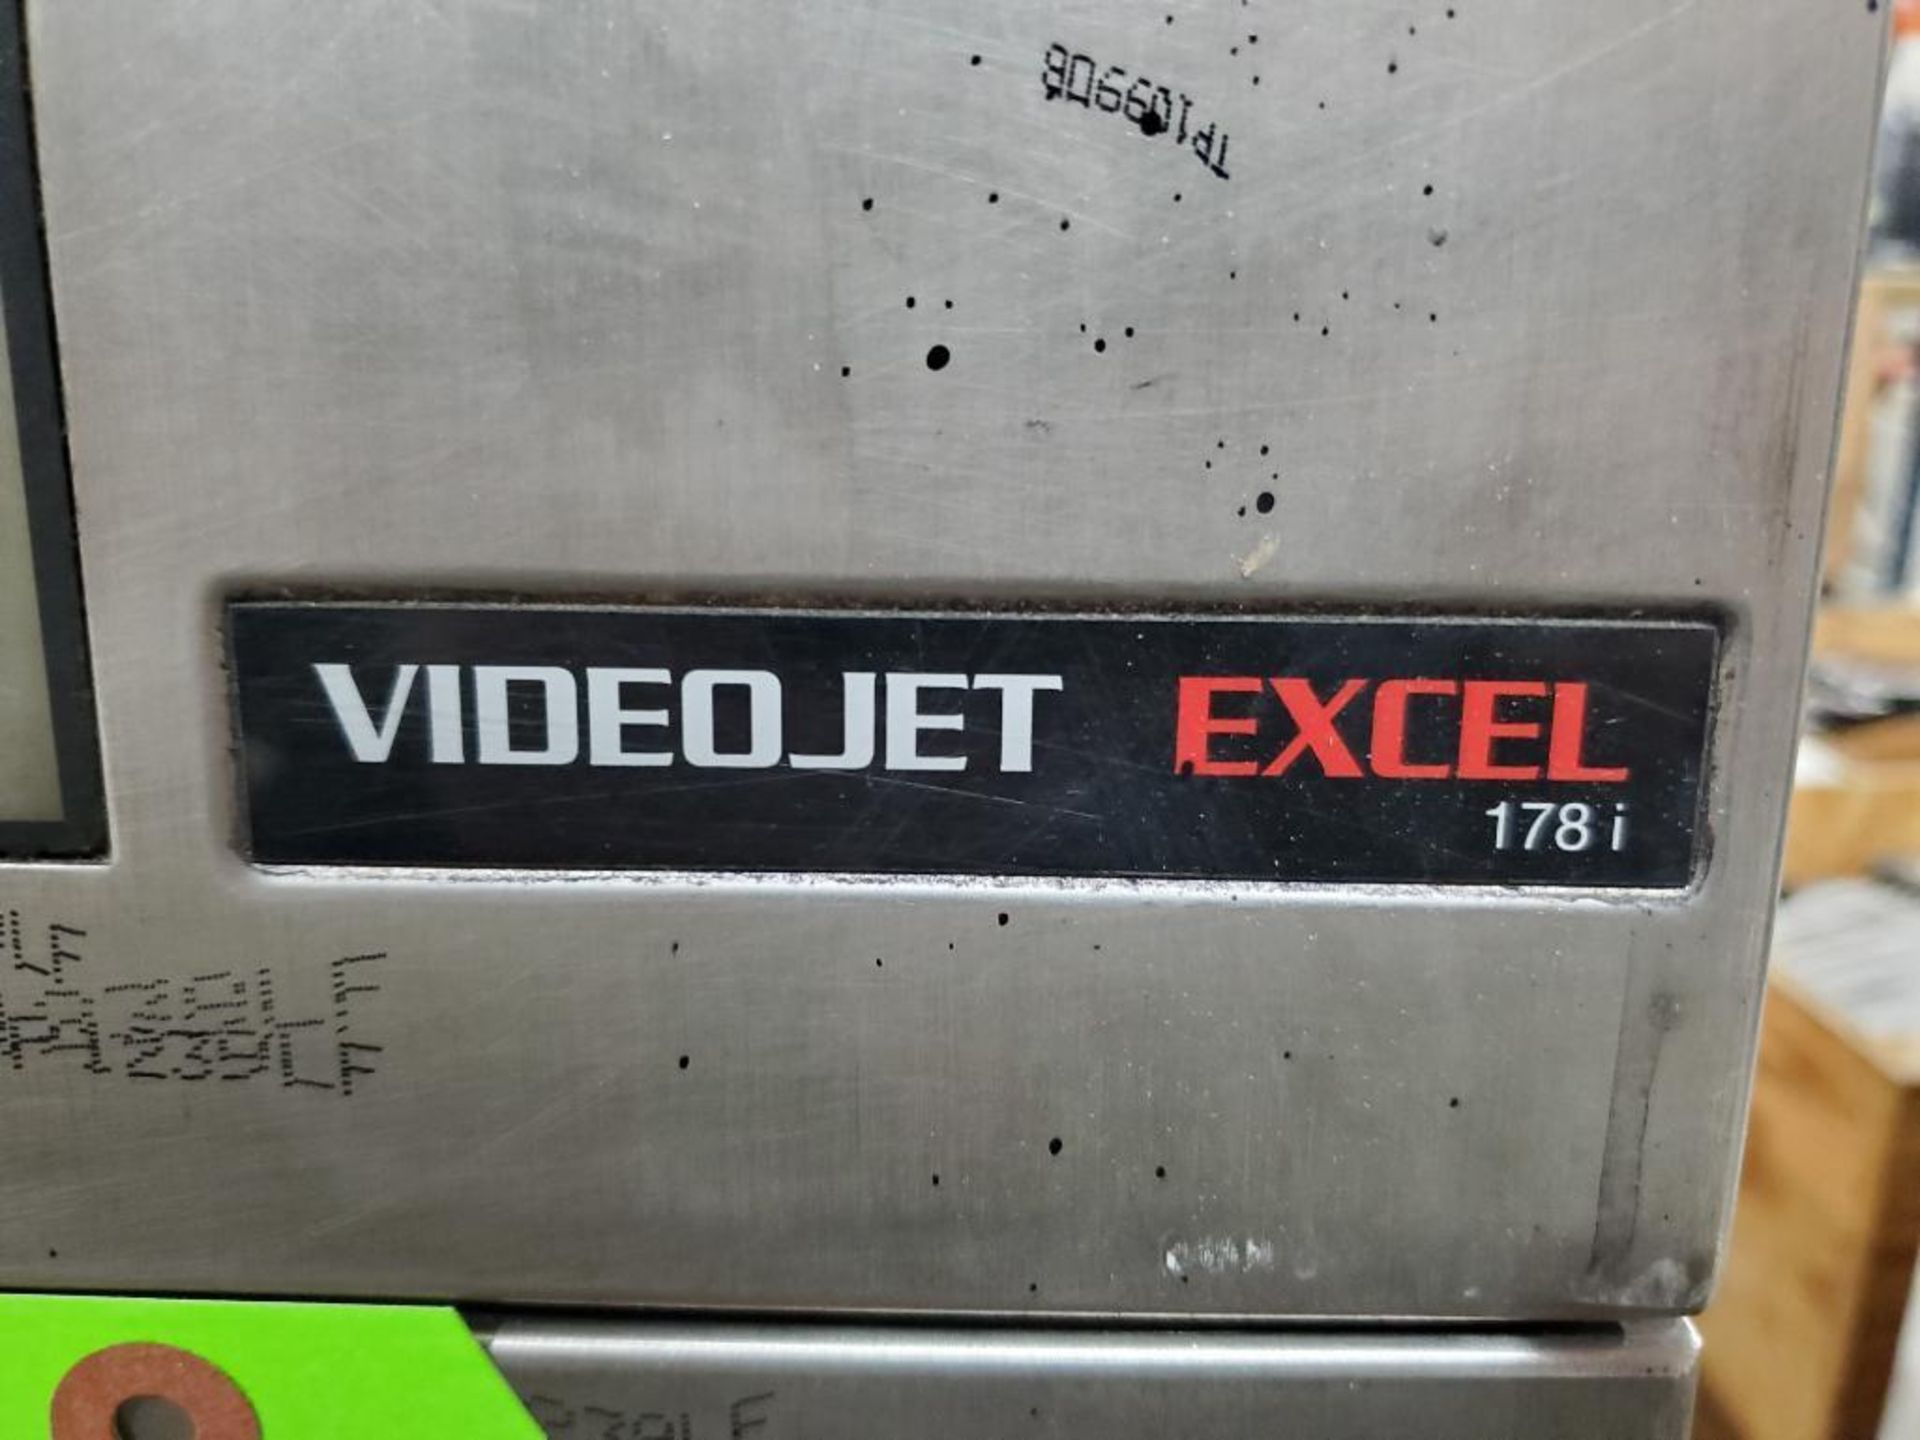 VideoJet Excel laser printer. Model 178i. - Image 2 of 15